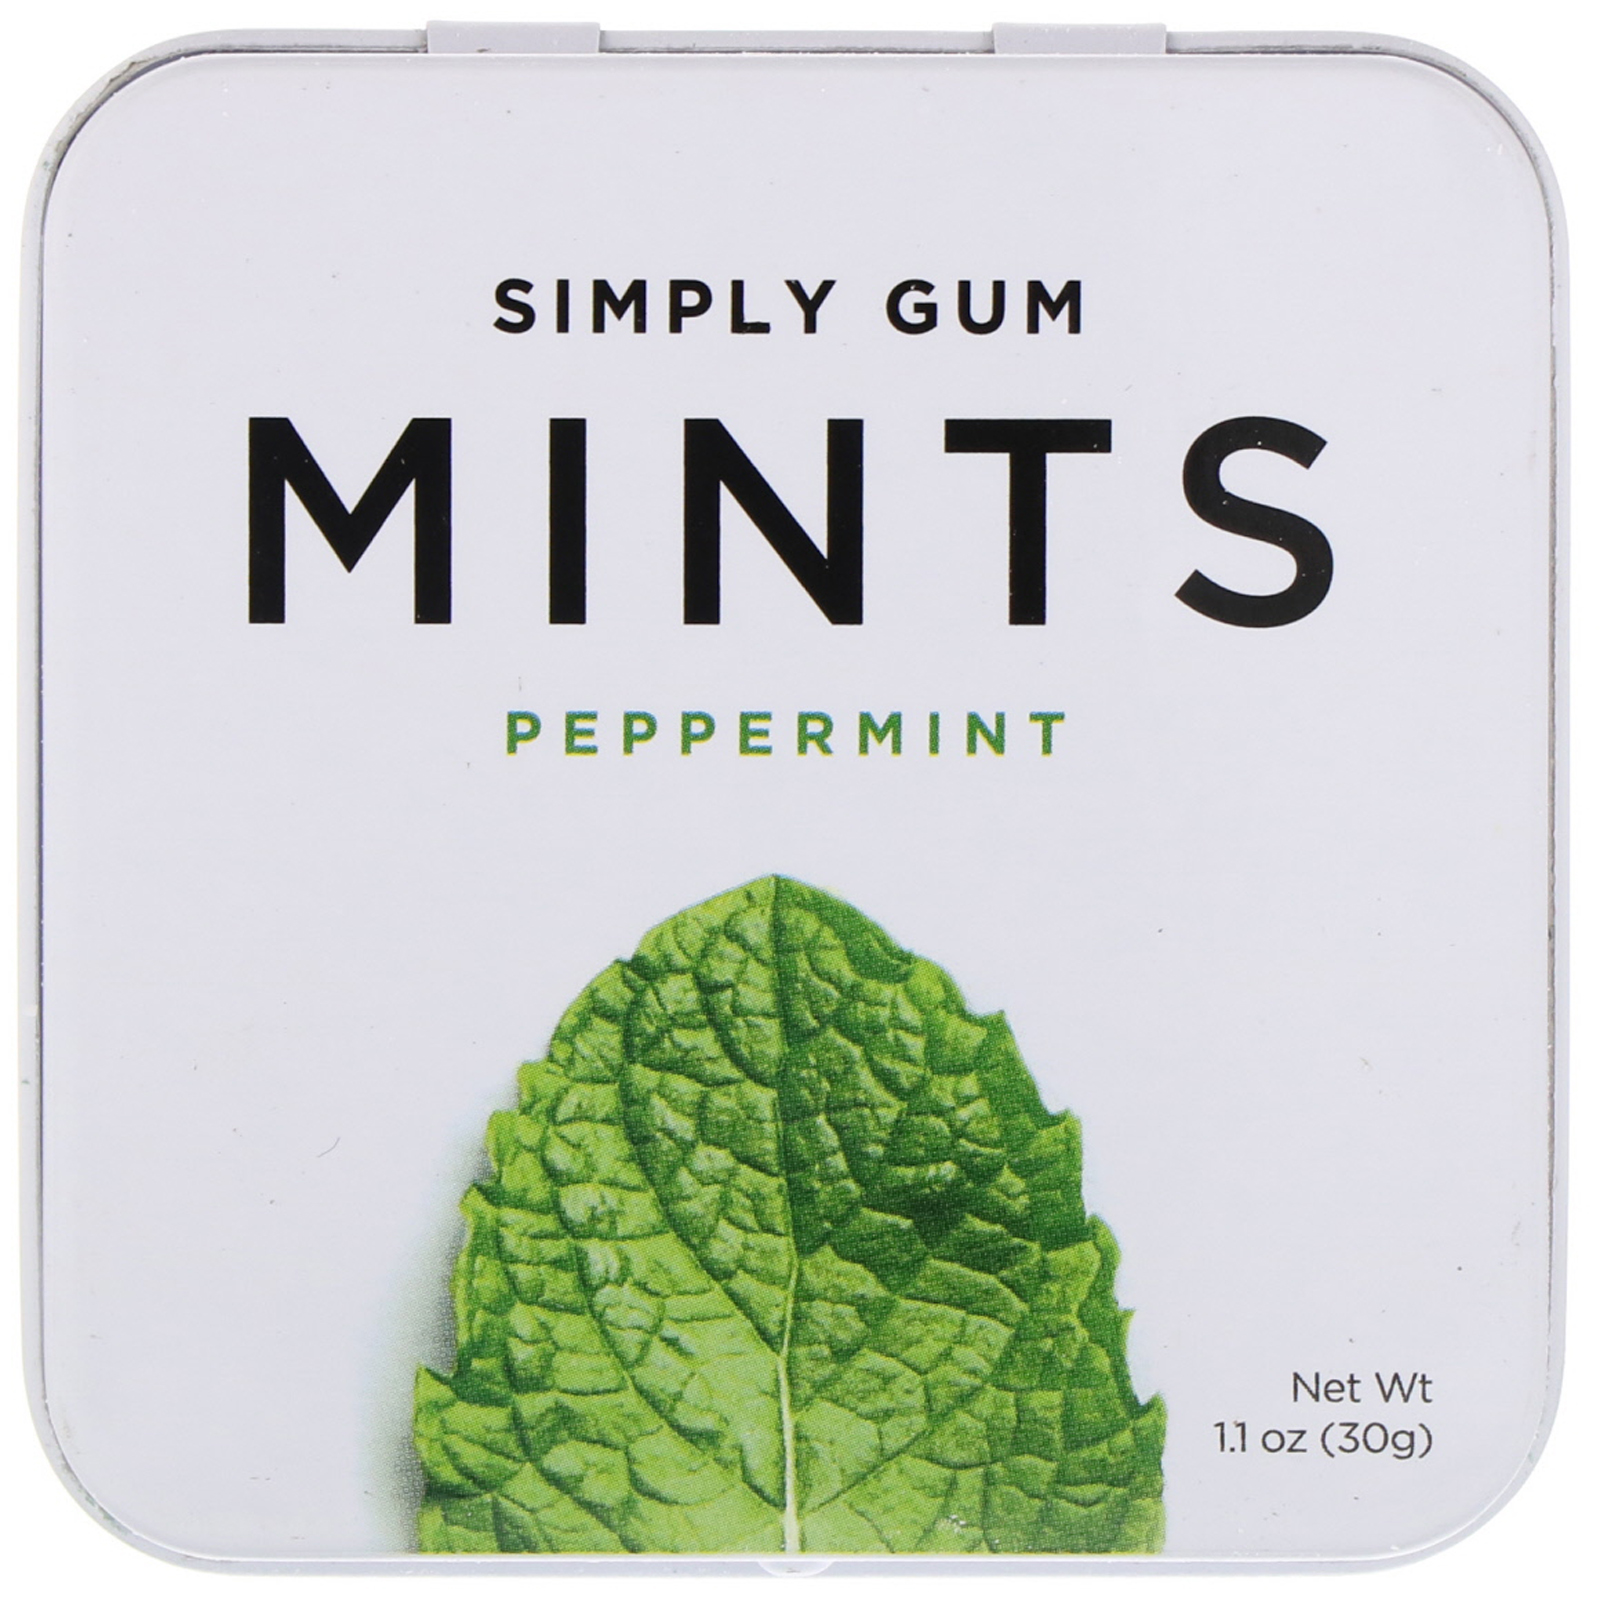 Simply gum. Simply Gum жевательная резинка. Mints конфеты Peppermint. Перечная мята конфеты.